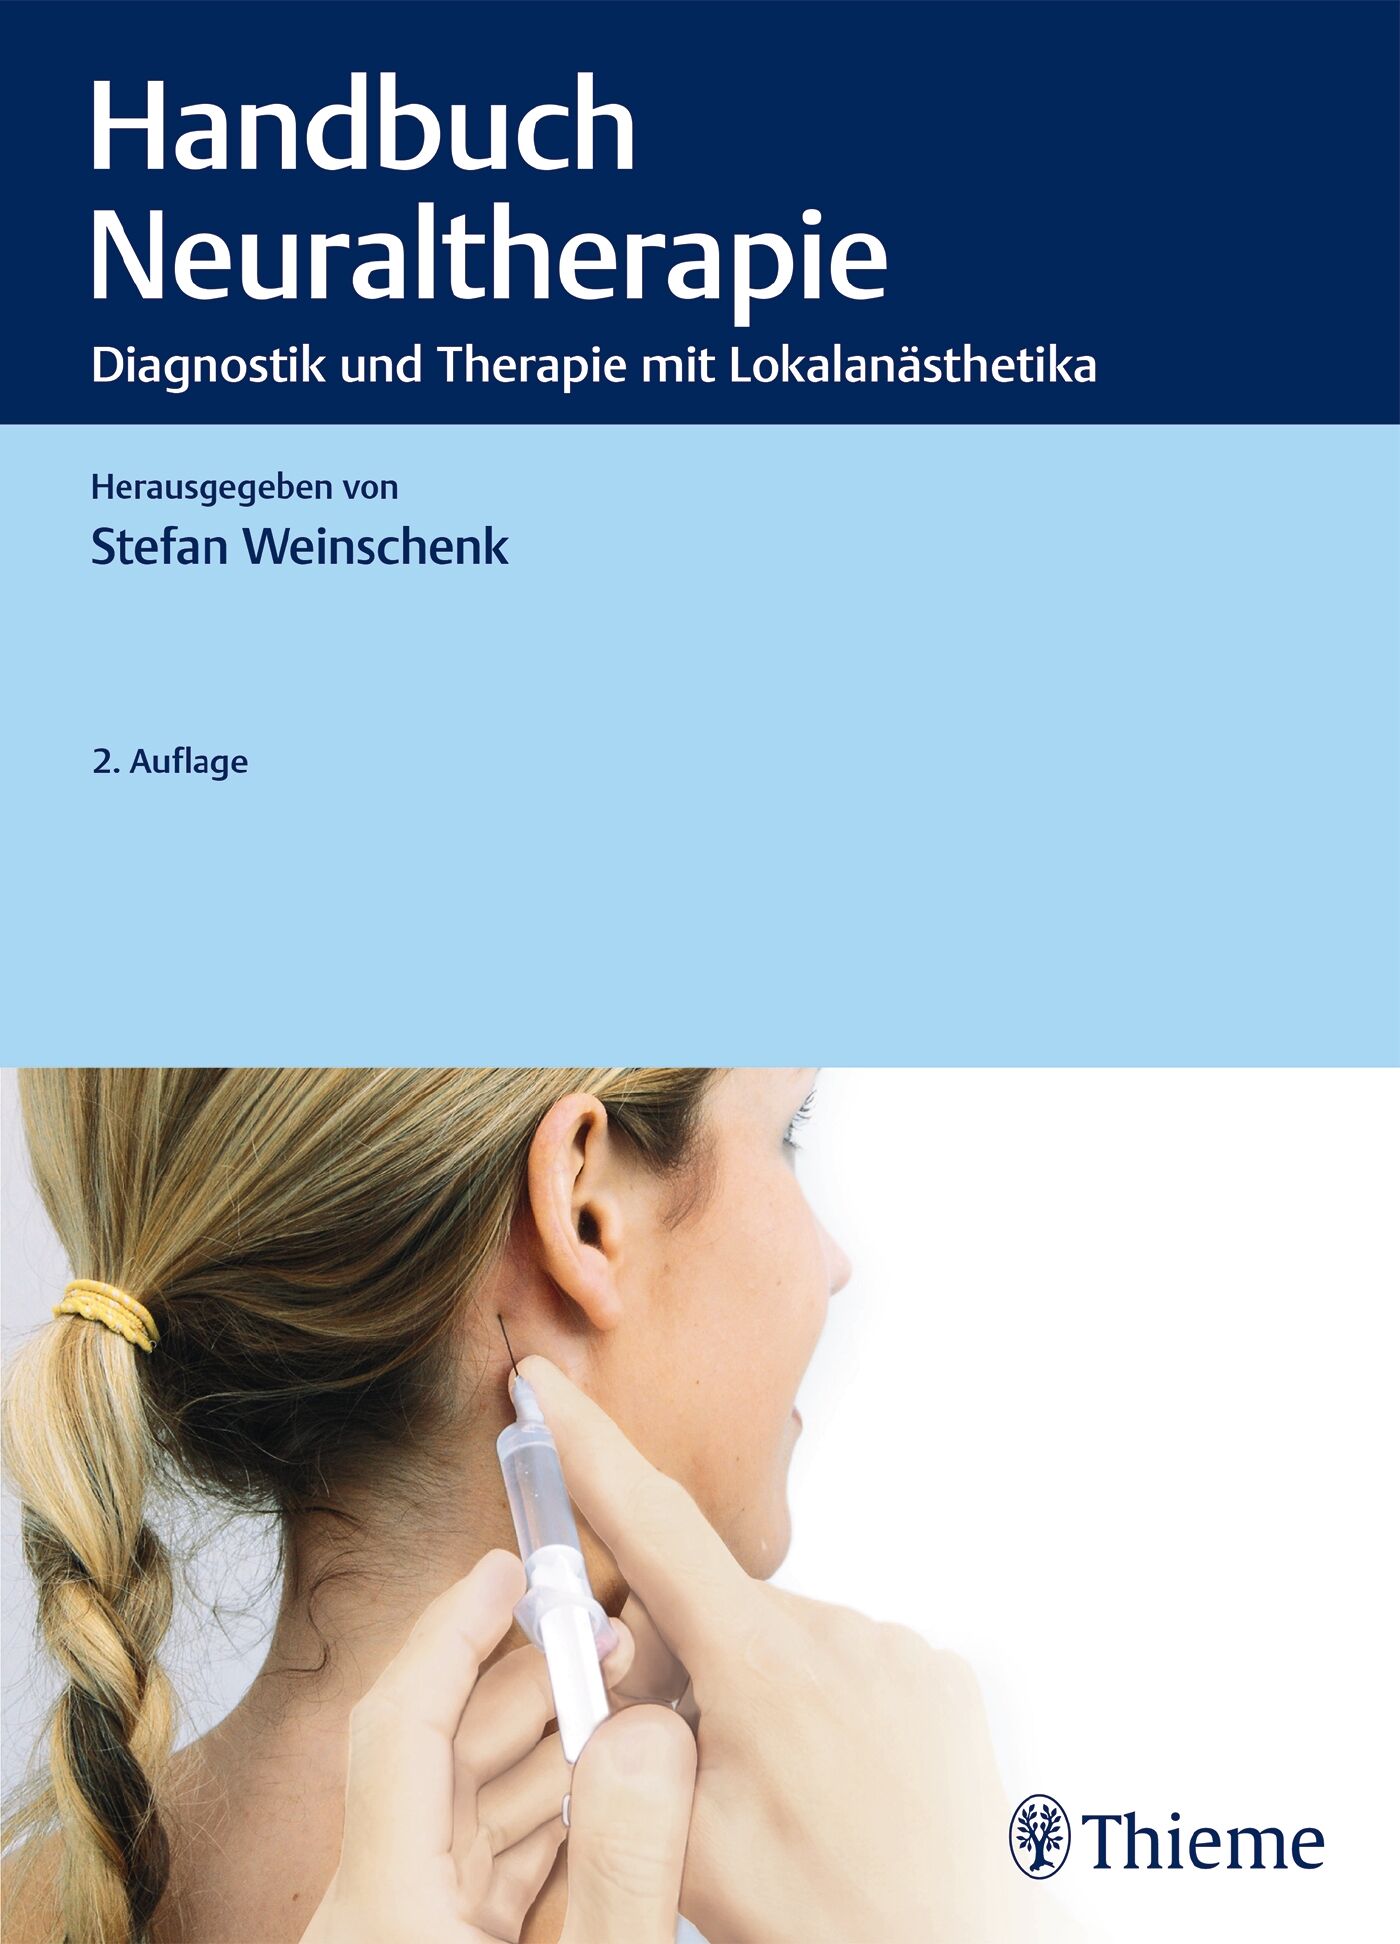 Handbuch Neuraltherapie, 9783132204911